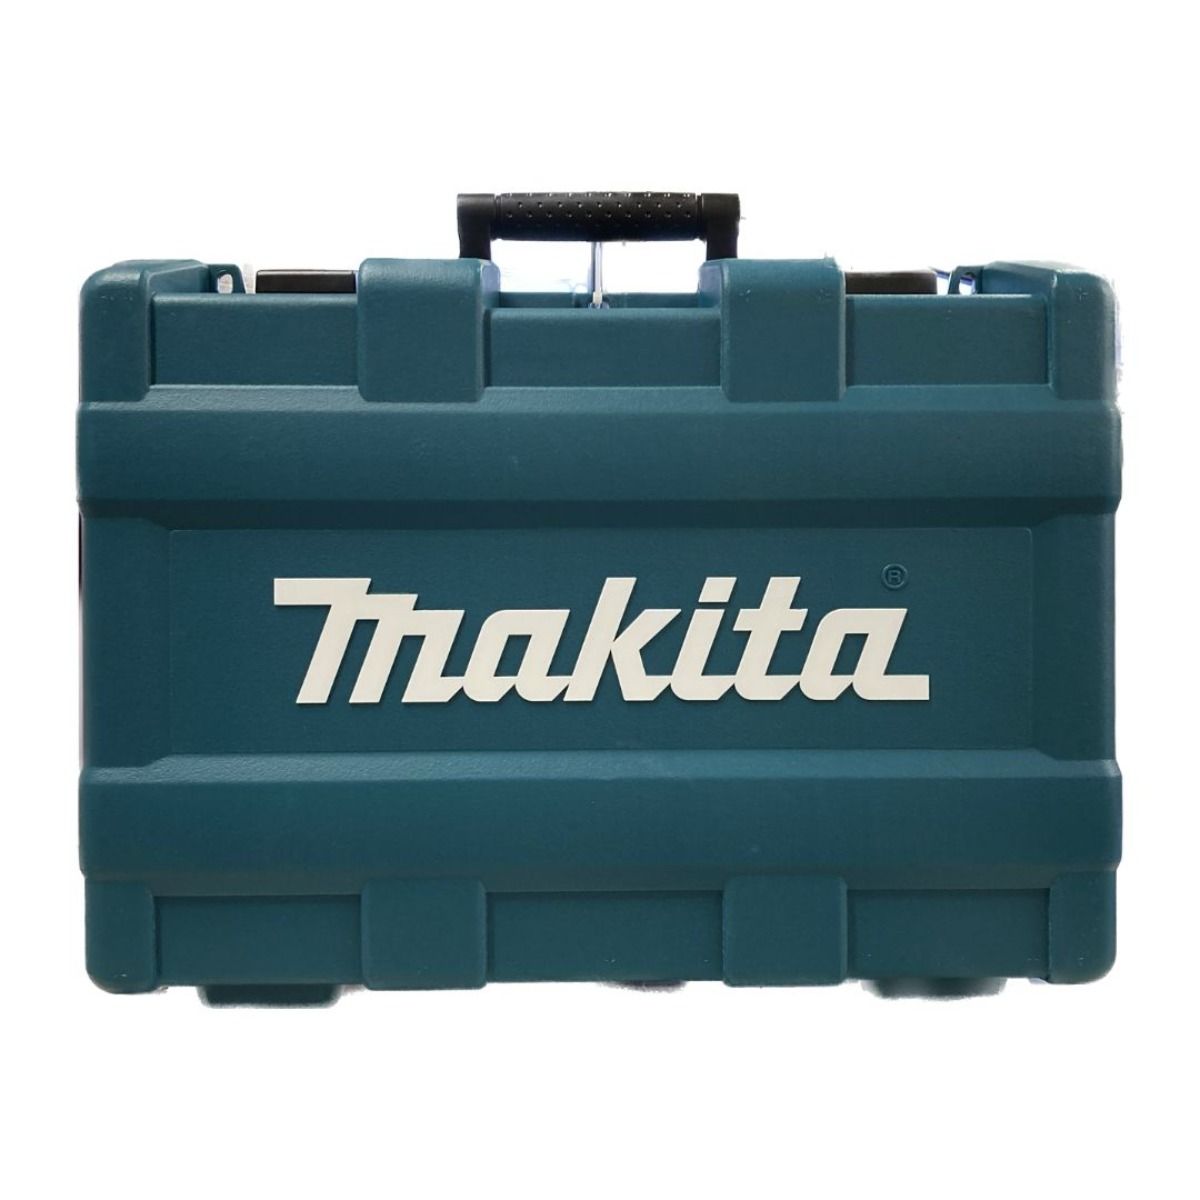 MAKITA マキタ 18V 充電式インパクトレンチ (バッテリ2個・充電器・ケース付) (2) TW700DRGX ブルー  なんでもリサイクルビッグバンSHOP メルカリ